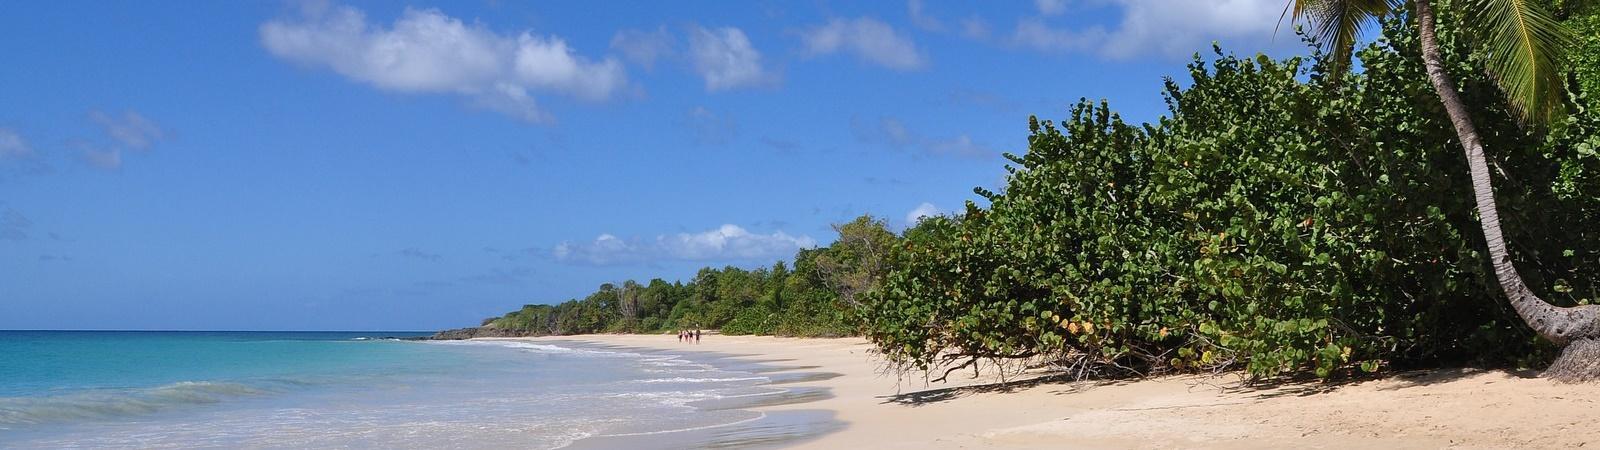 Bild Koh Maphrao (Coconut Island) ein Paradies für Familien